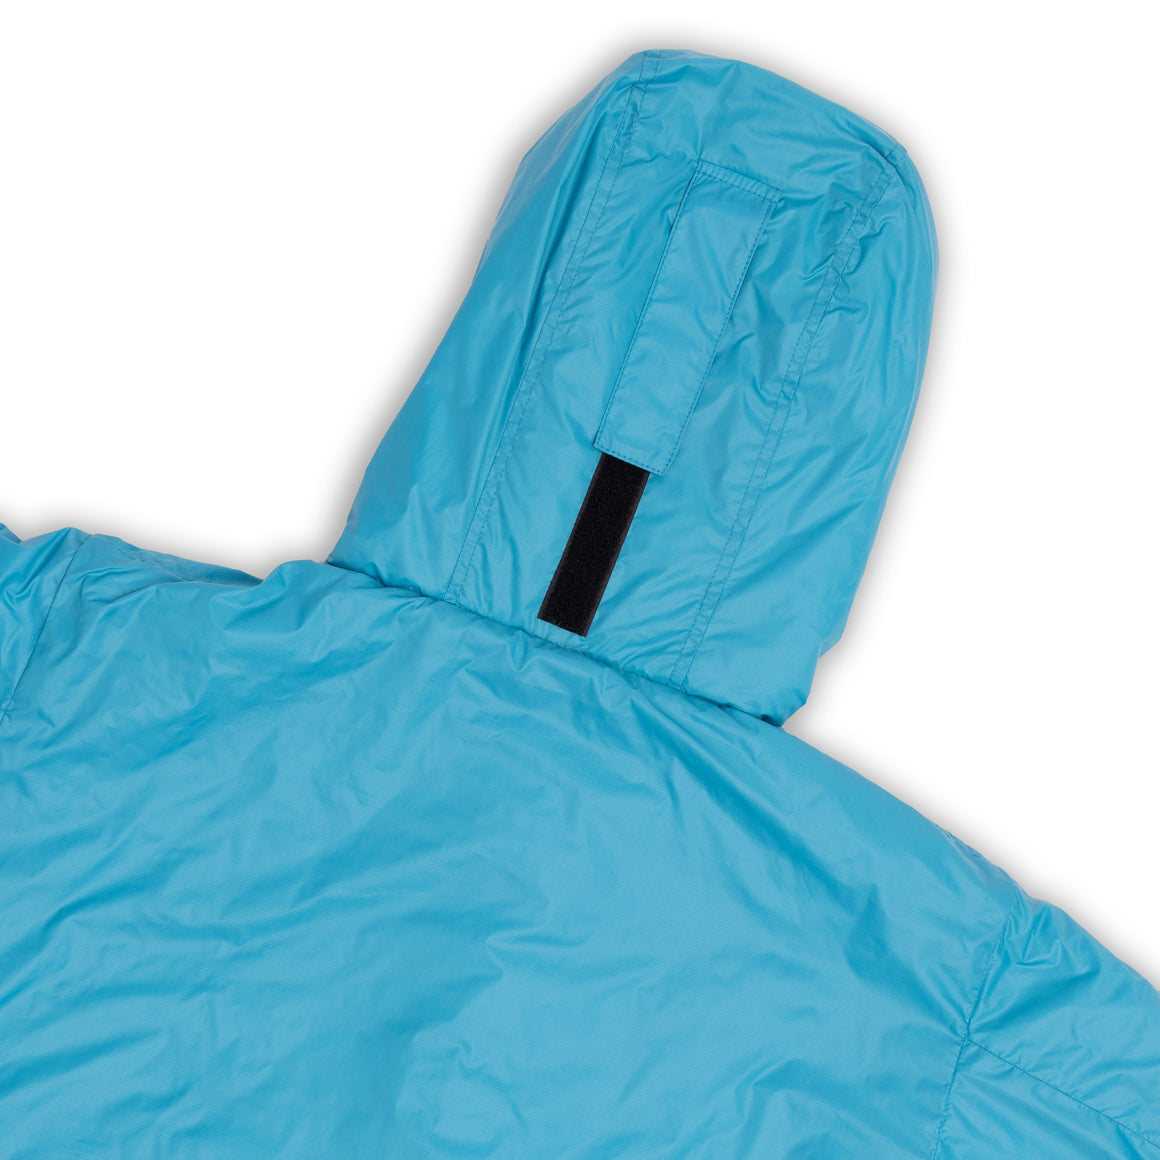 CozyBag Light - our lightweight sleeping bag